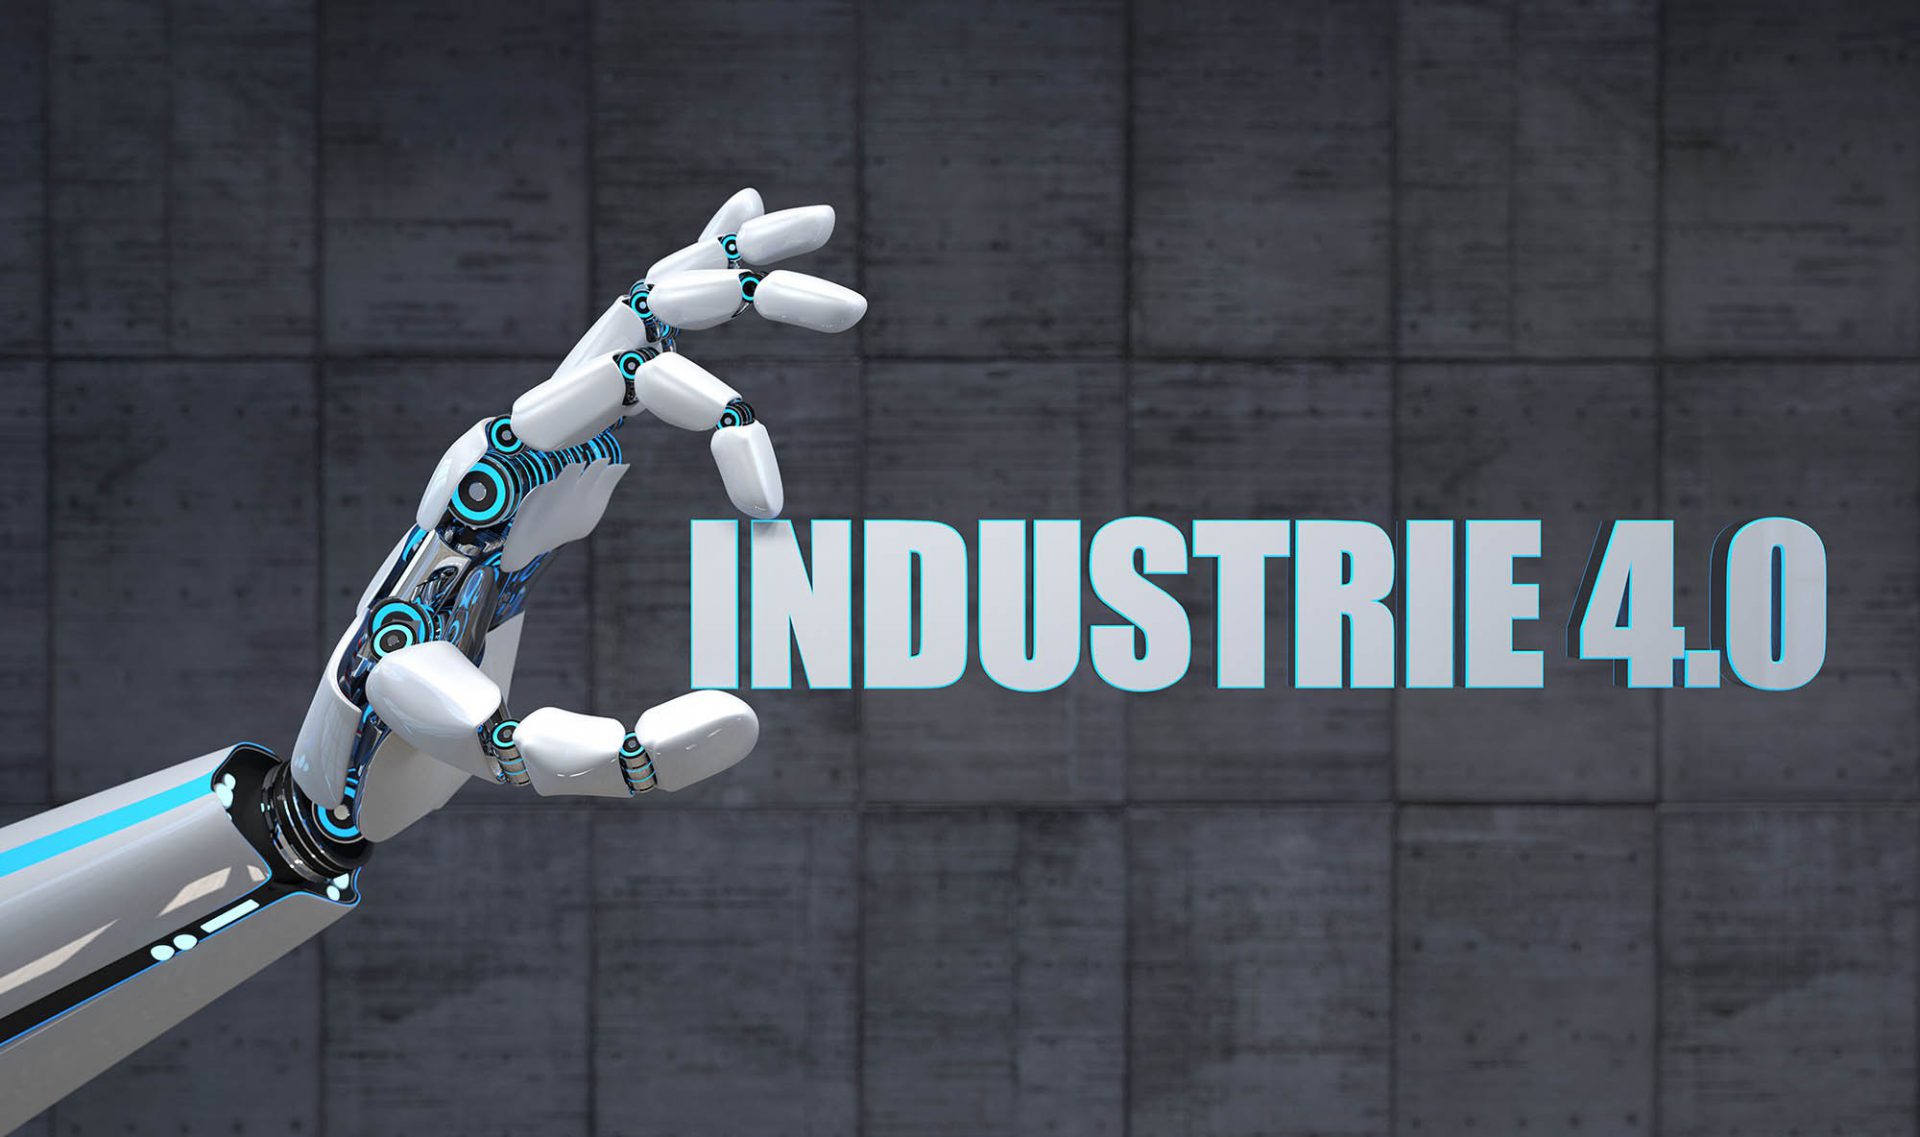 Robotic hand industry 4.0